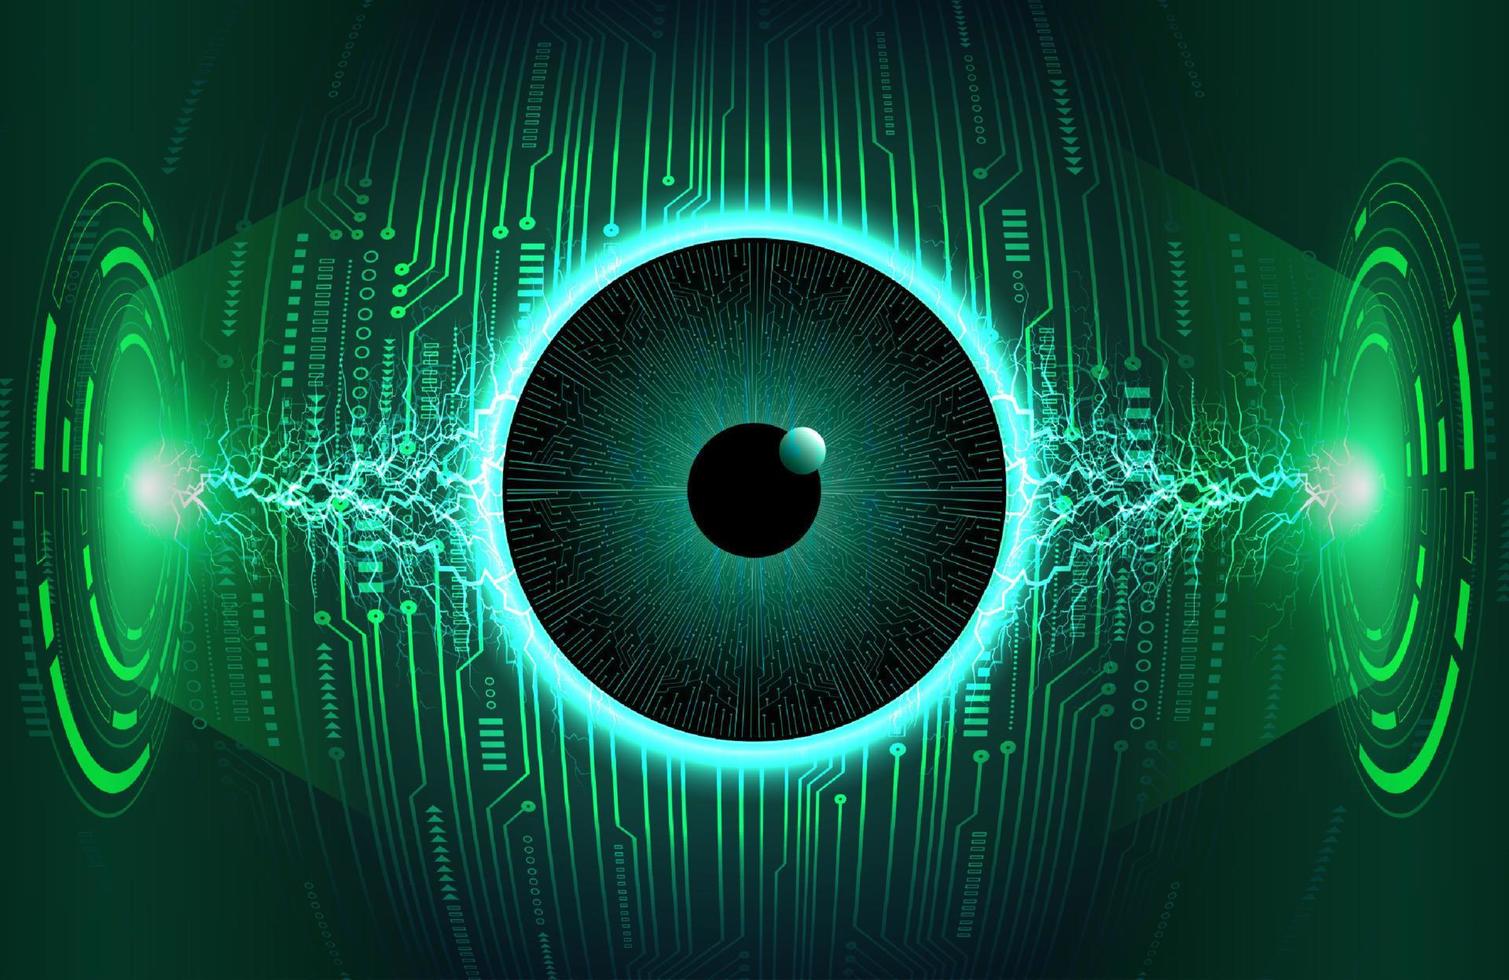 holografia de olho moderno em fundo de tecnologia vetor